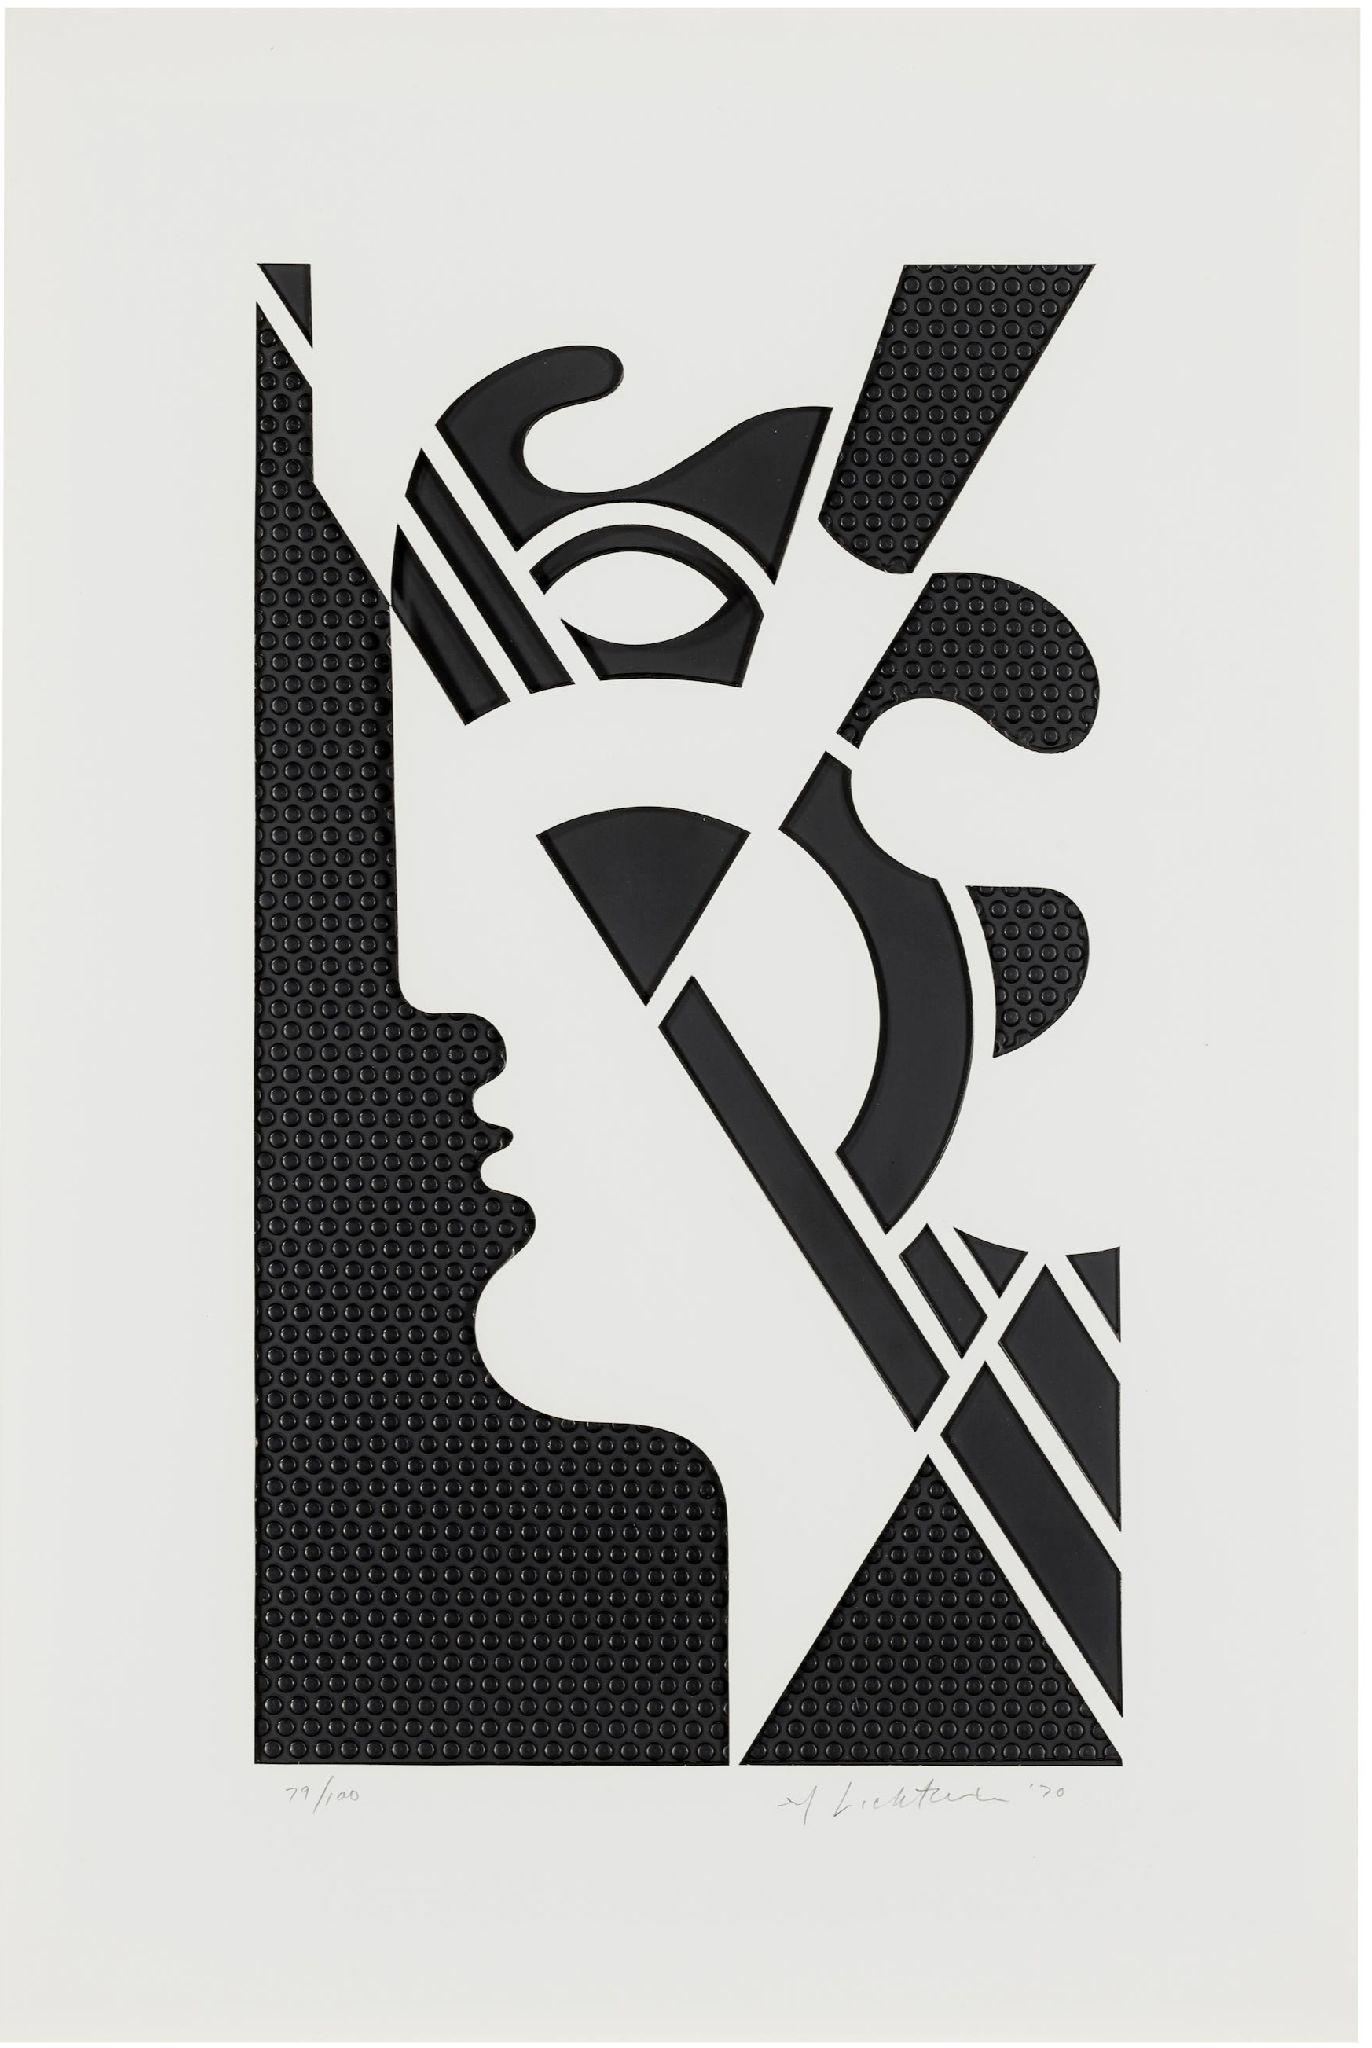 Tête moderne n°5
1970
Graphite gaufré avec recouvrement de papier découpé Strathmore, monté dans un cadre en aluminium laqué blanc avec support de châssis en bois.
Signé, daté et numéroté au crayon
Éditeur : L.E.G.L., Los Angeles.
Corlett 95